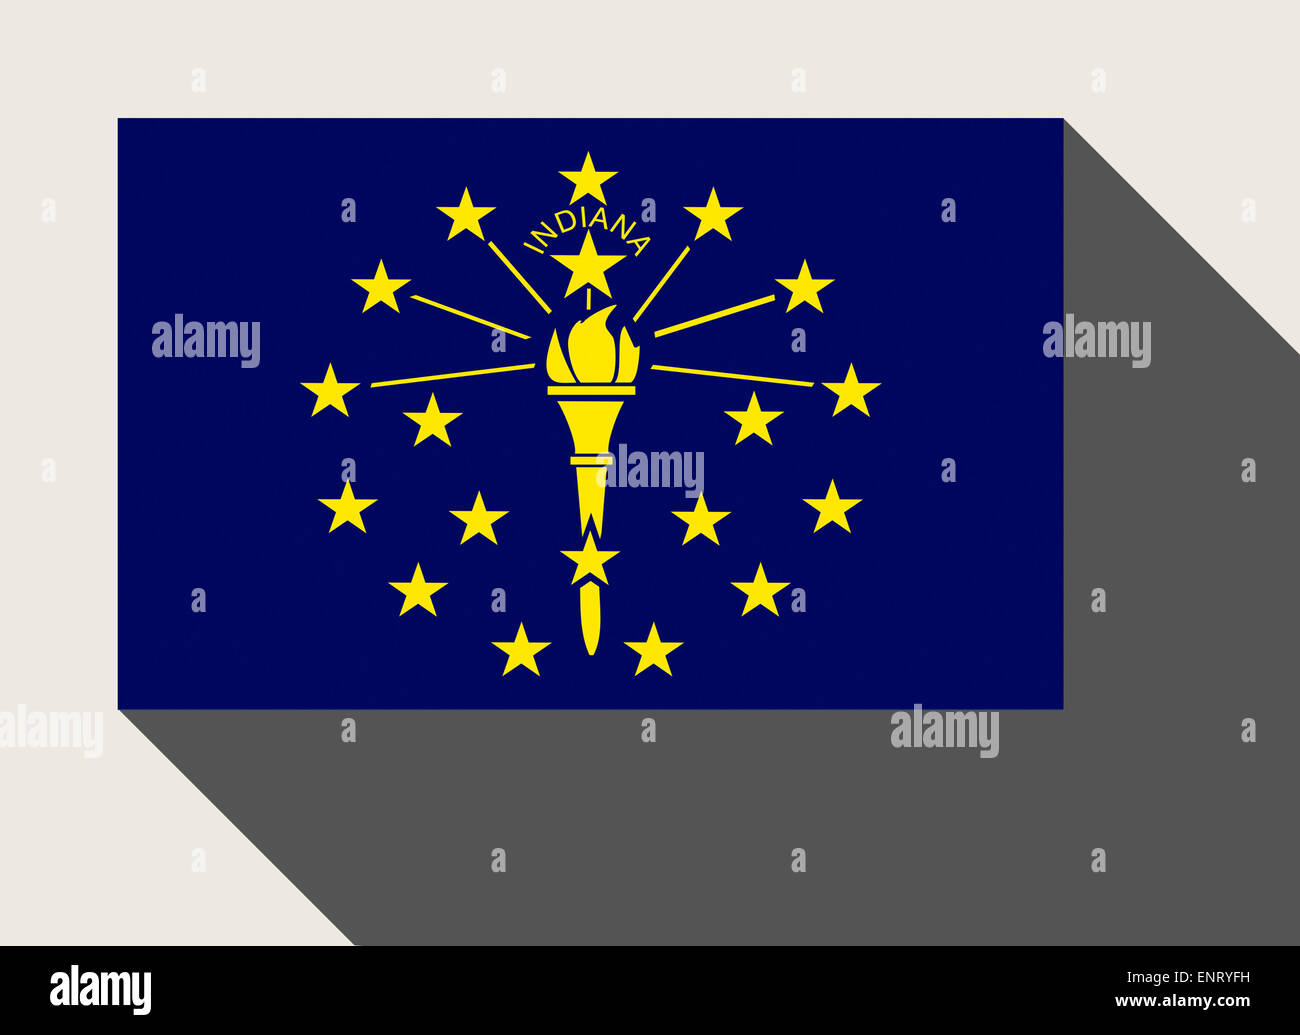 Amerikanischen Bundesstaat Indiana Flagge in flachen Web-Design-Stil. Stockfoto